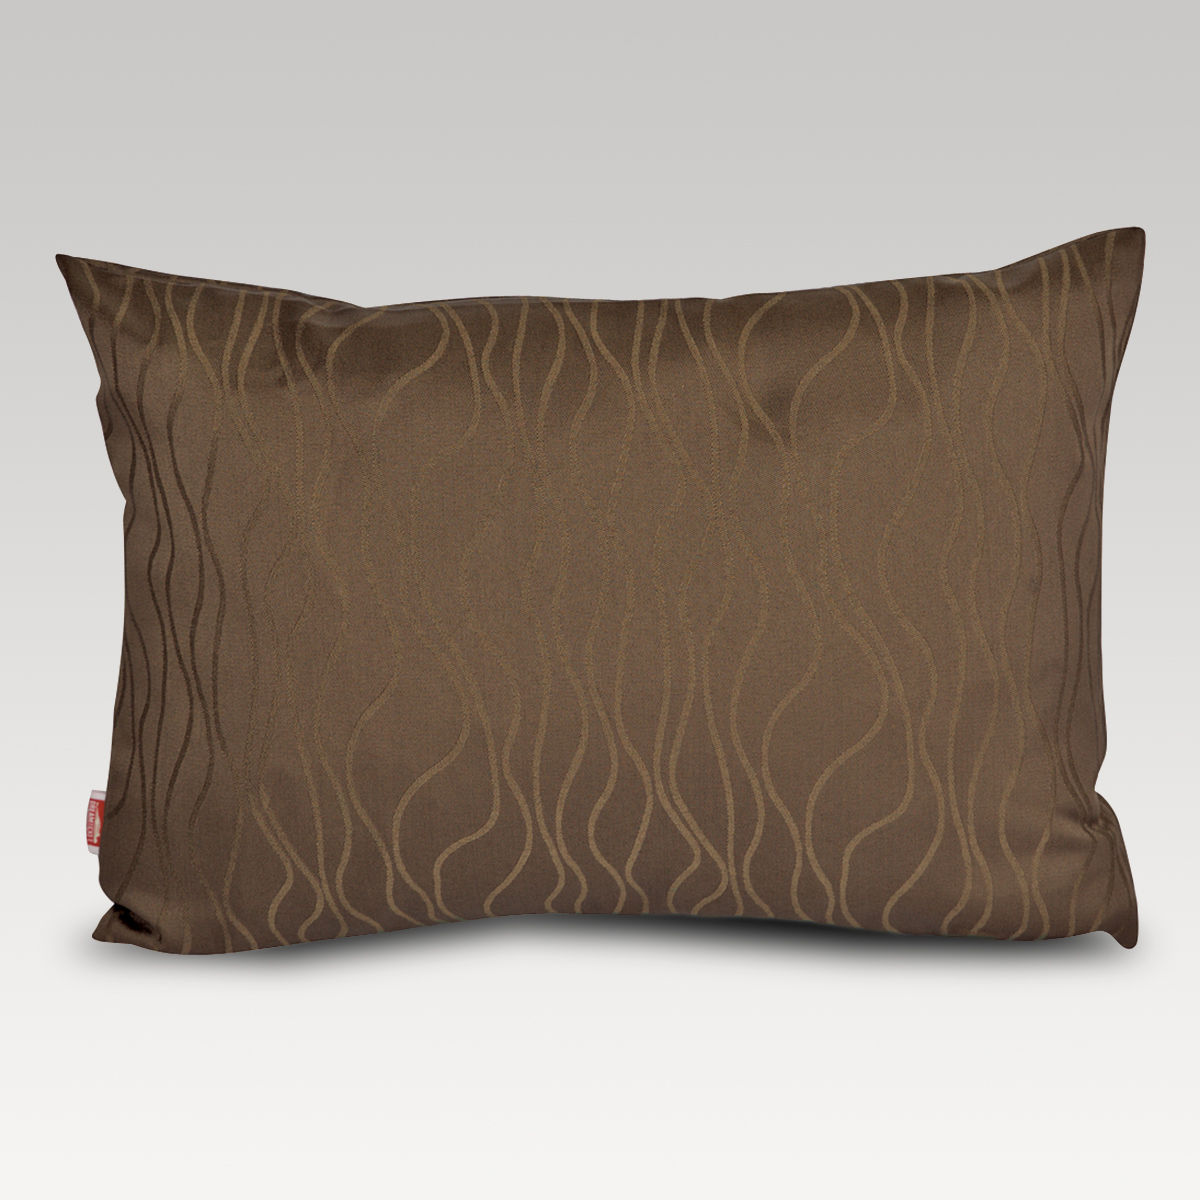 Image of Dreamticket Residence Cushion Cover Bark - Oblong